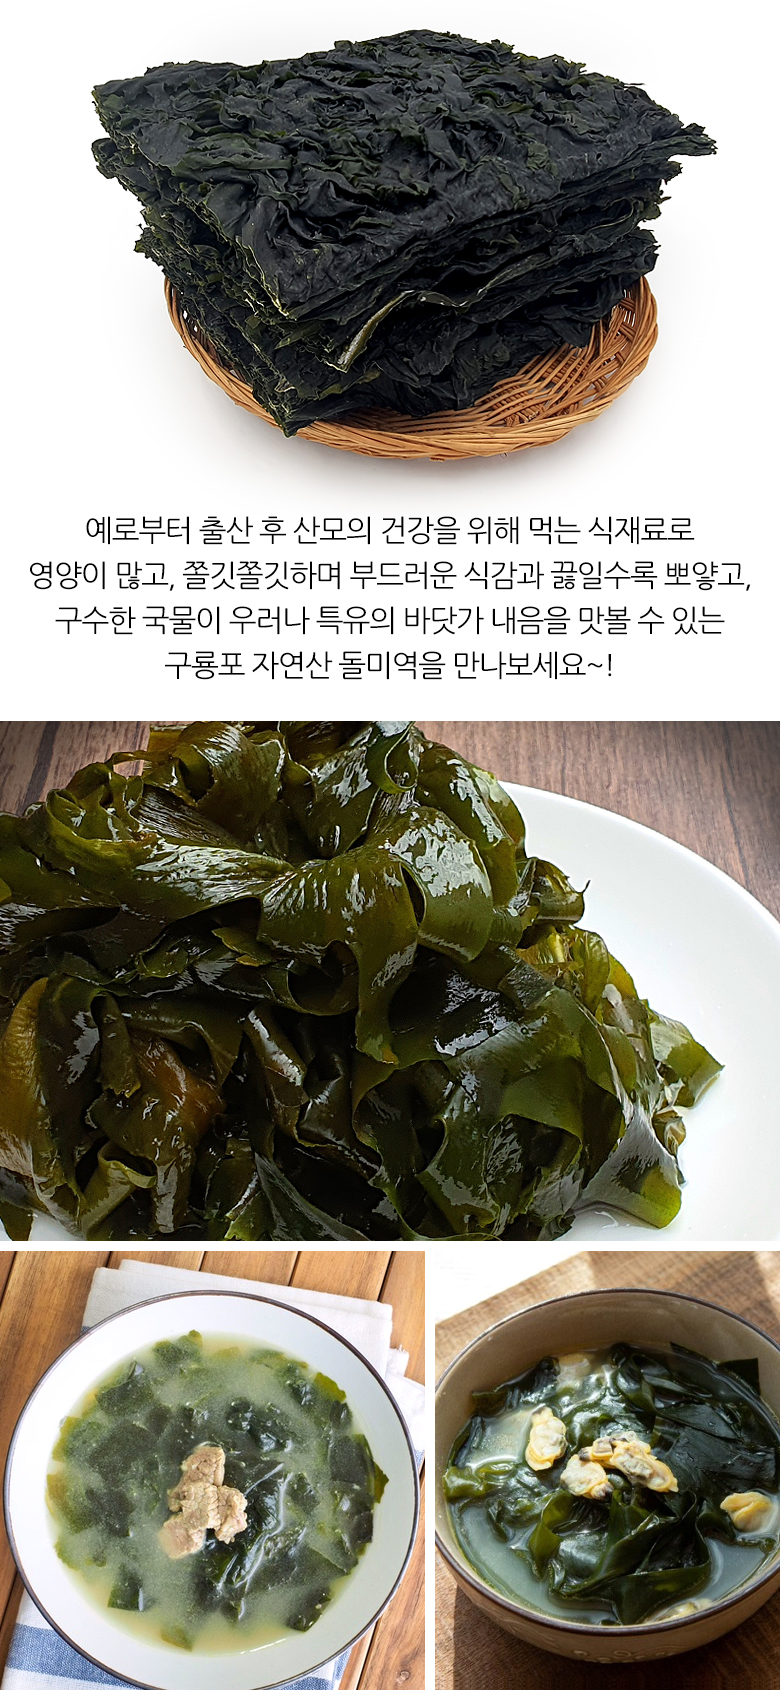 seaweed_3.jpg